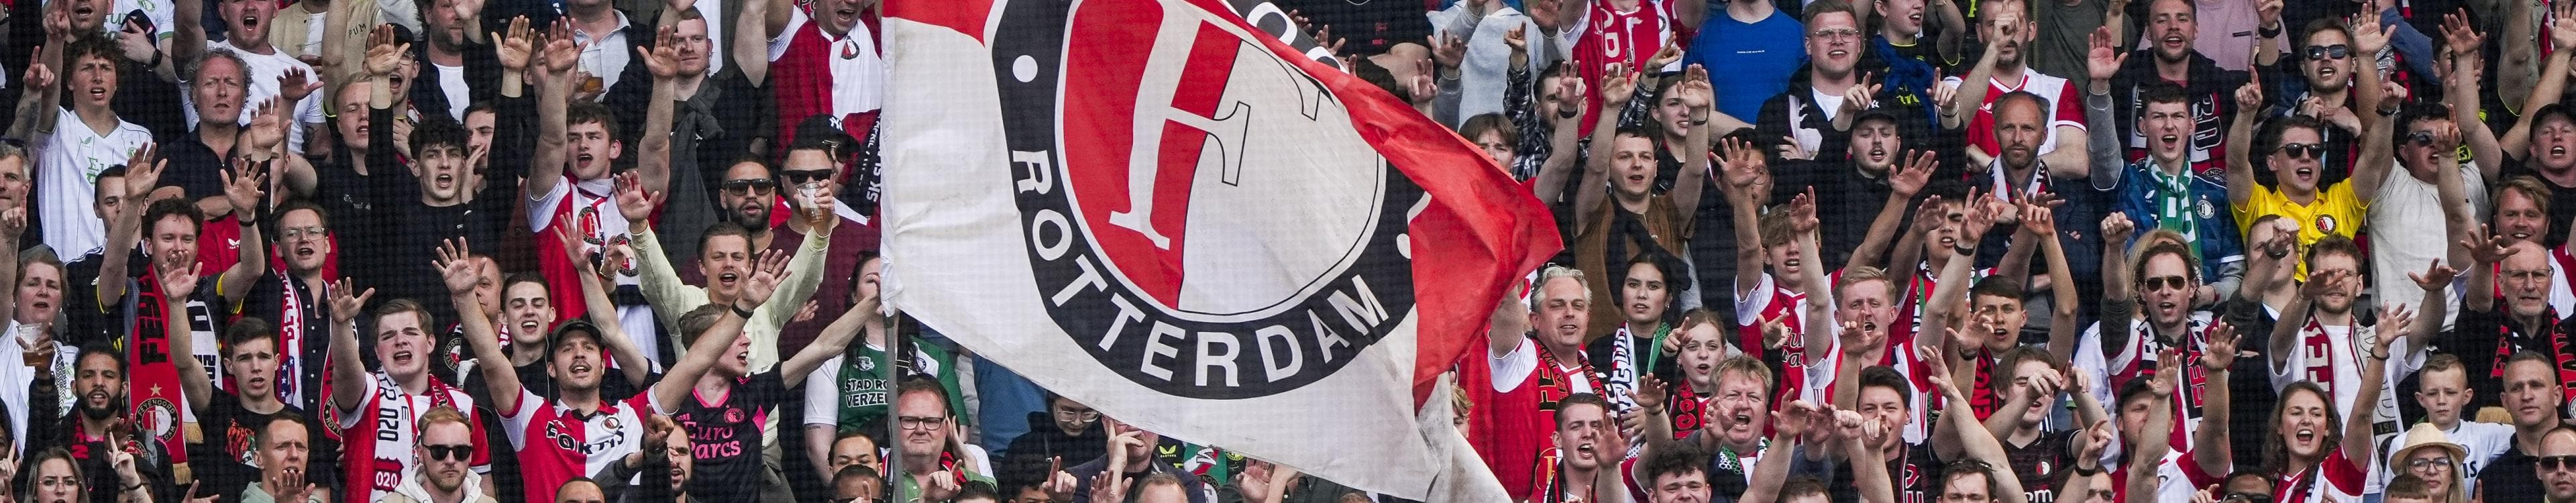 Juichende Feyenoord supporters met vlag op de tribune in de Kuip.